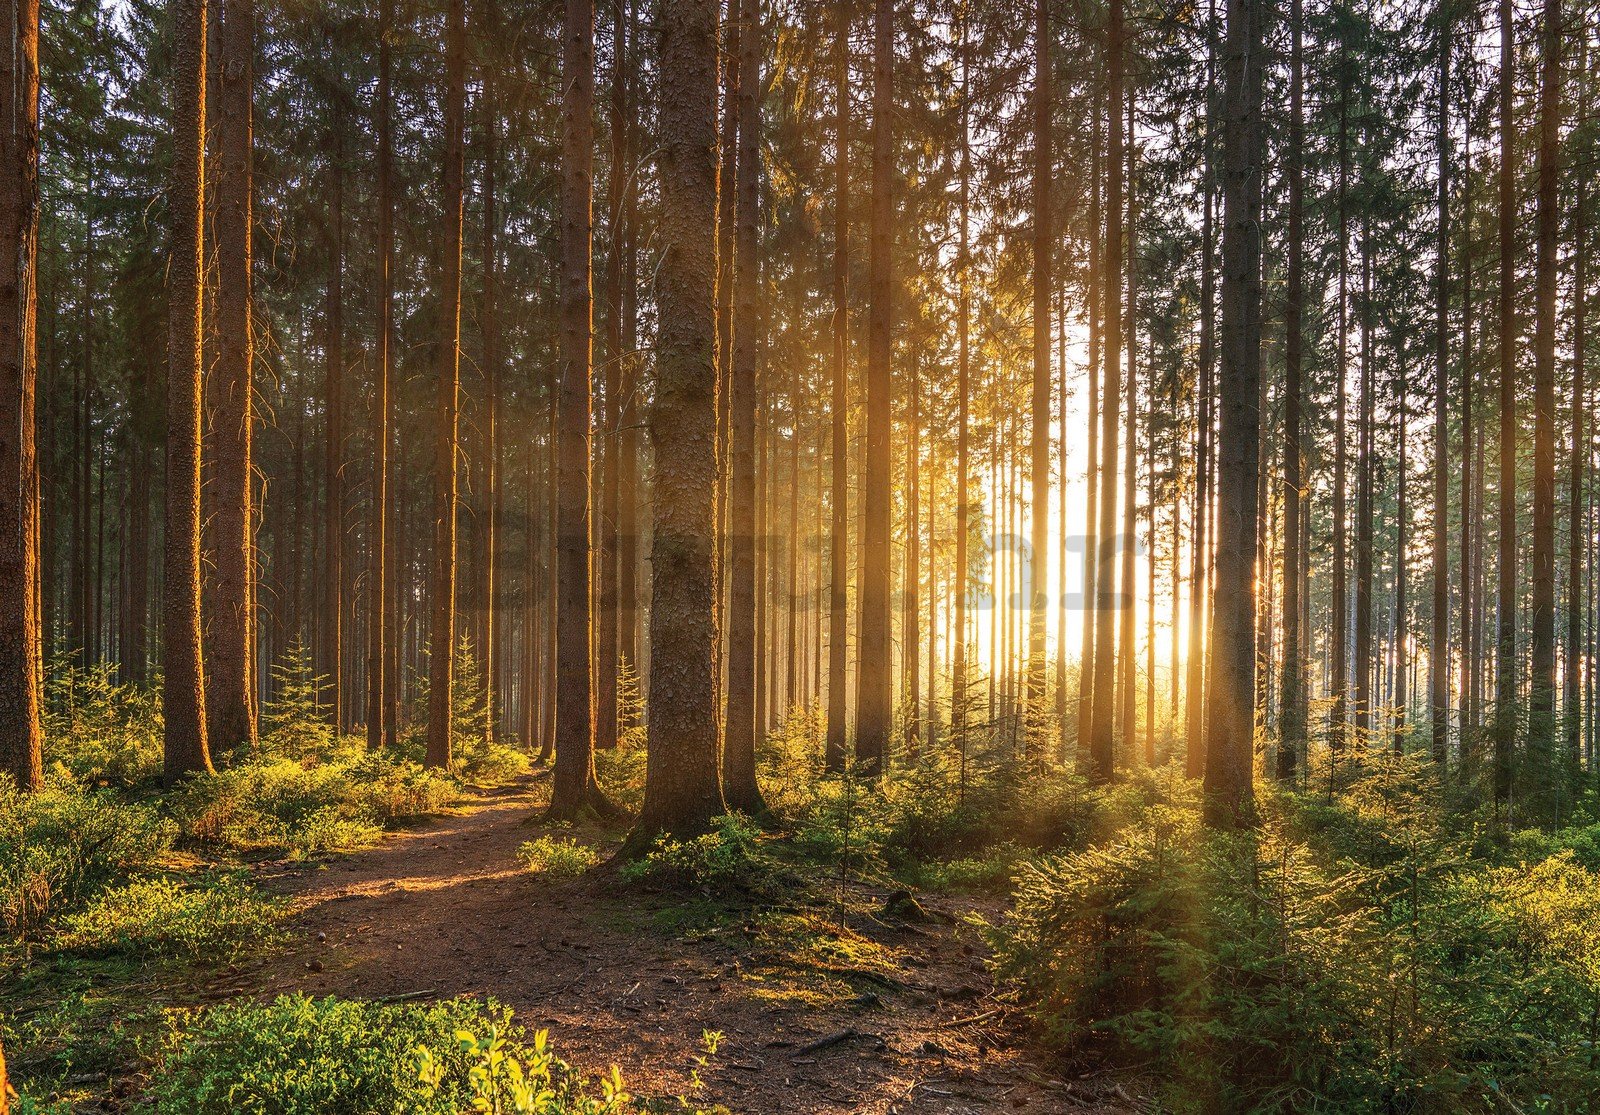 Vlies foto tapeta: Zalazak sunca u šumi (2) - 254x184 cm